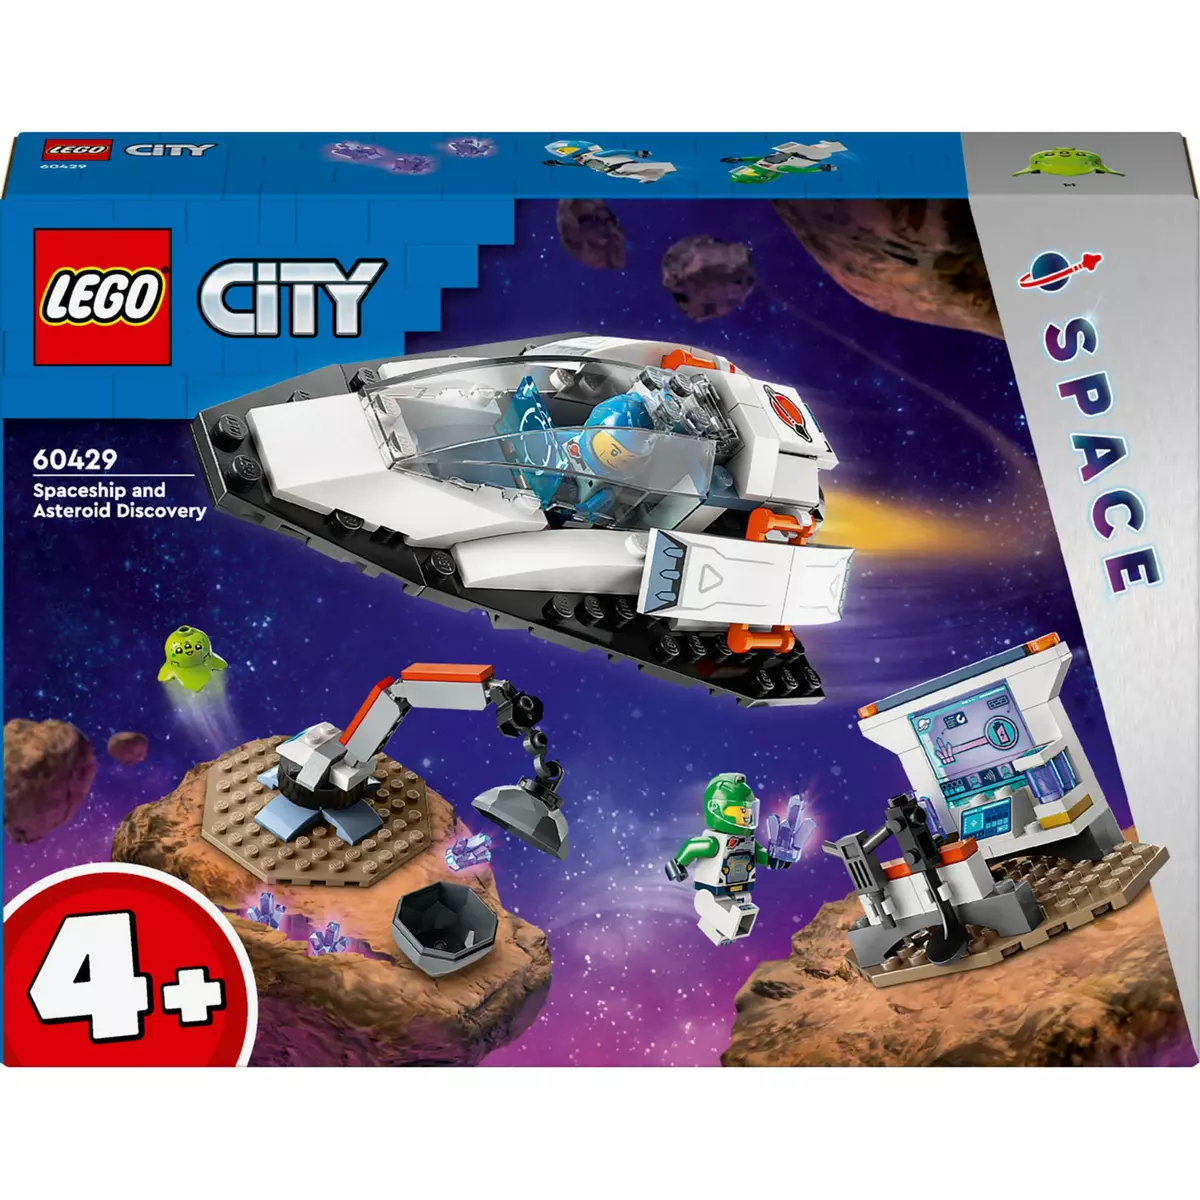 LEGO City 60429 Le Vaisseau et la Découverte de l'Astéroïde, Jouet